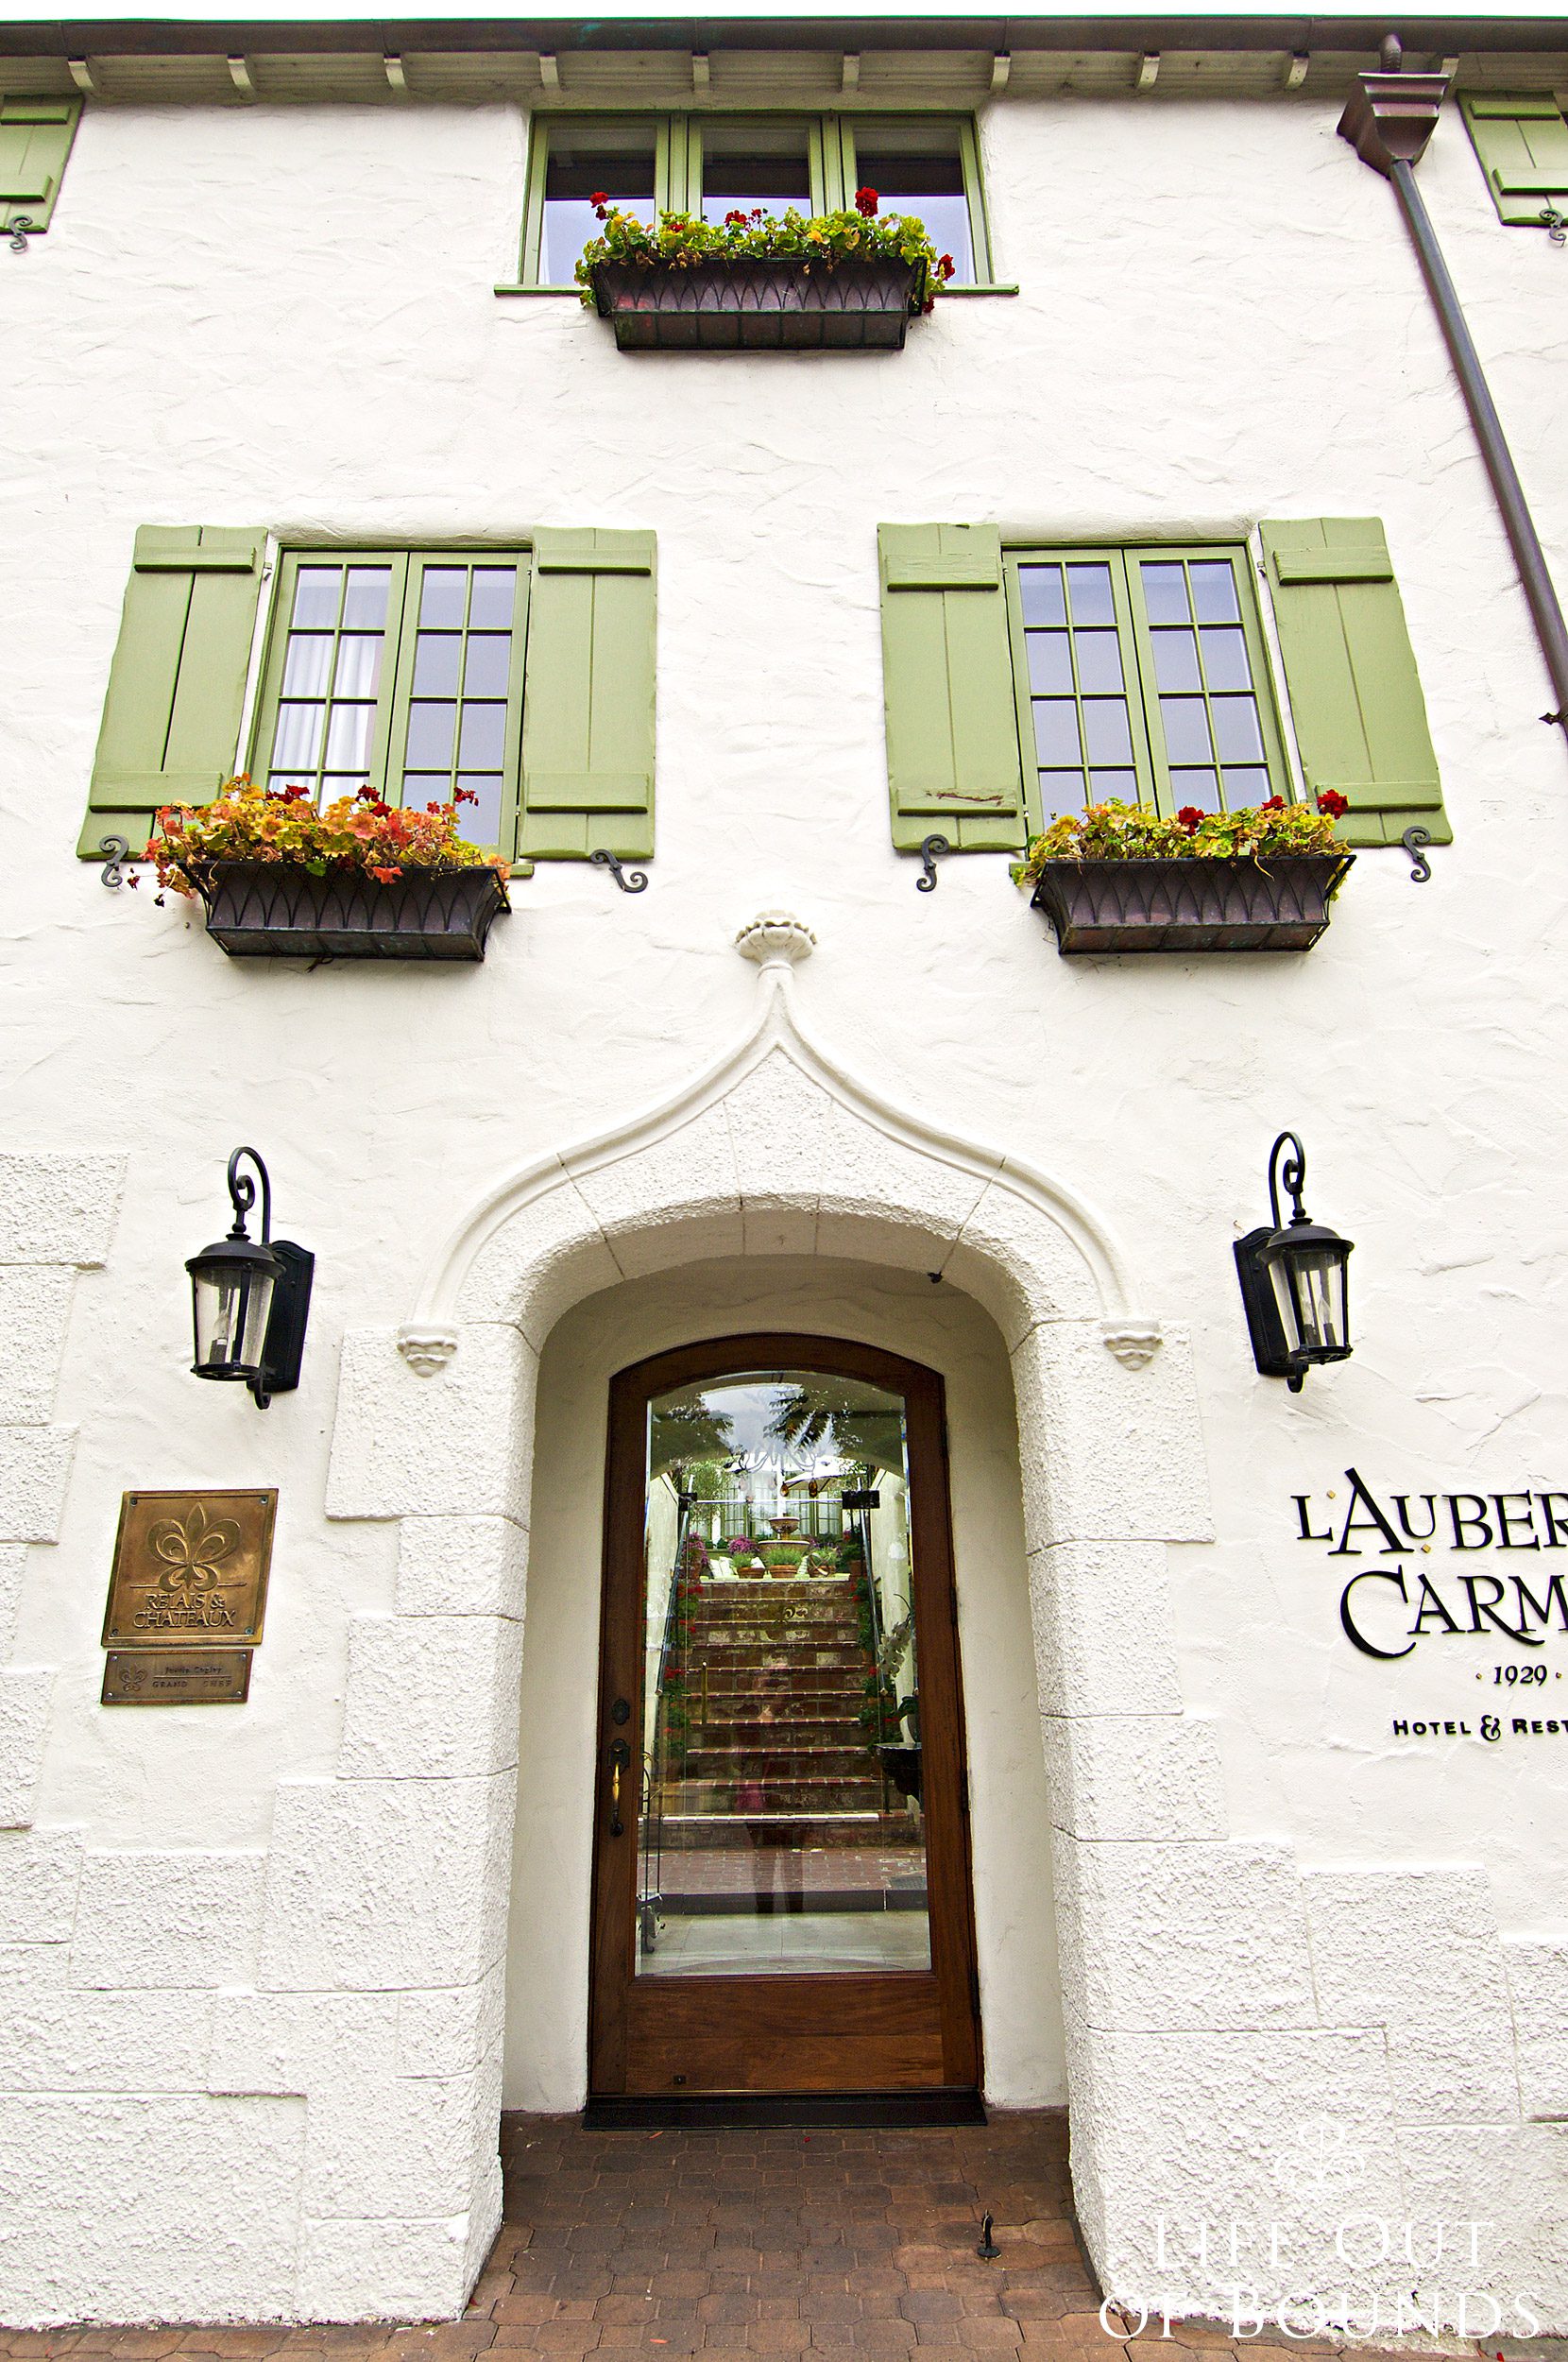 LAuberge-Carmel-Relais-Chateaux-Carmel-by-the-Sea-California